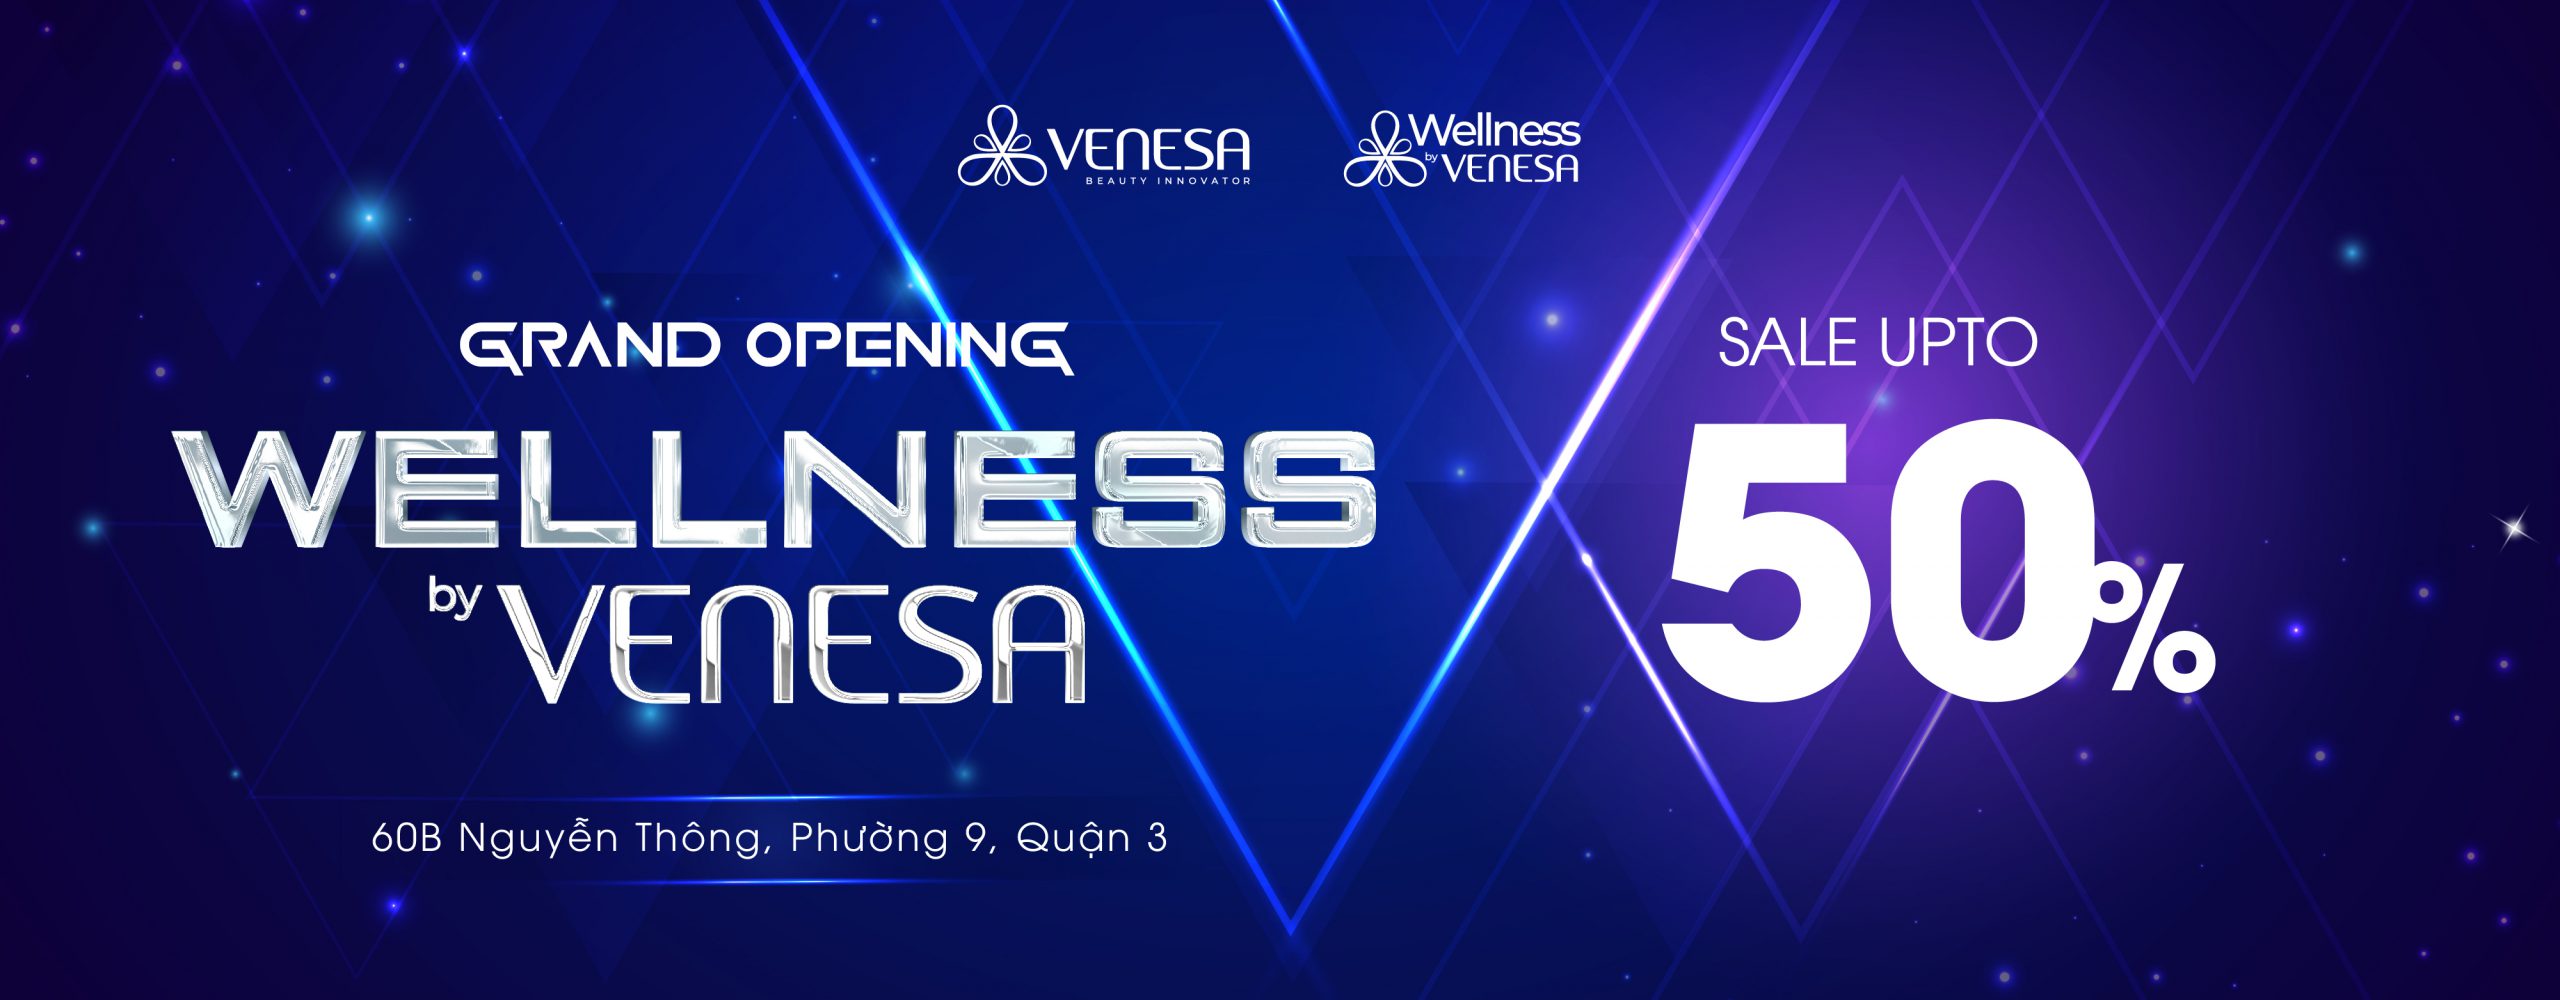 Grand Opening Wellness by Venesa Nguyễn Thông